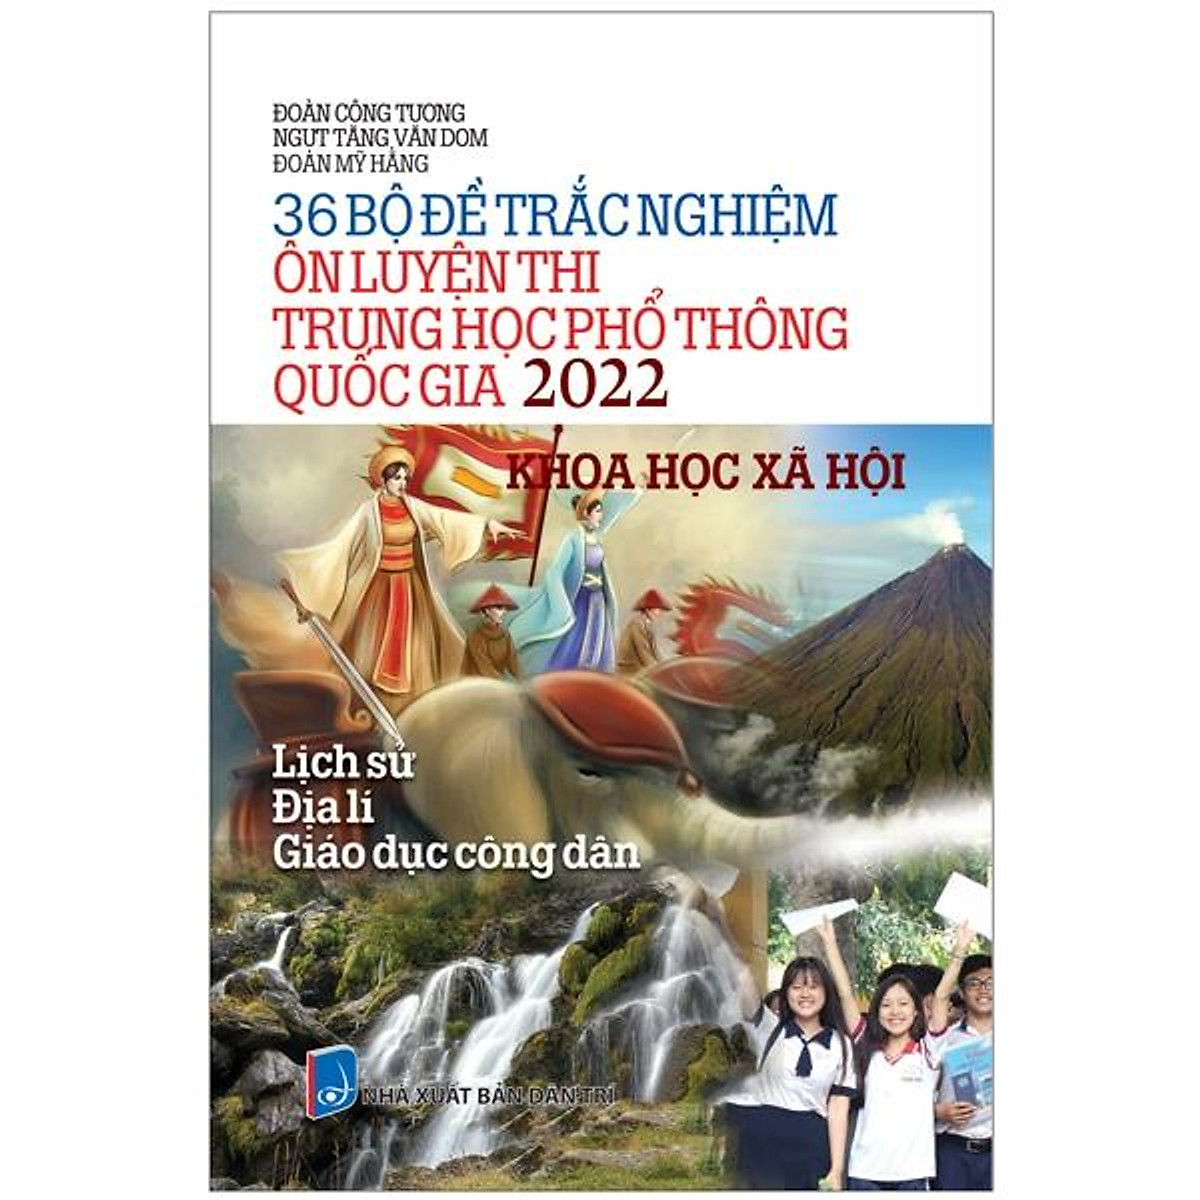 36 Bộ Đề Trắc Nghiệm Ôn Luyện Thi THPT Quốc Gia 2022 - Khoa Học Xã Hội (Lịch Sử - Địa Lí - Giáo Dục Công Dân) ebook PDF-EPUB-AWZ3-PRC-MOBI